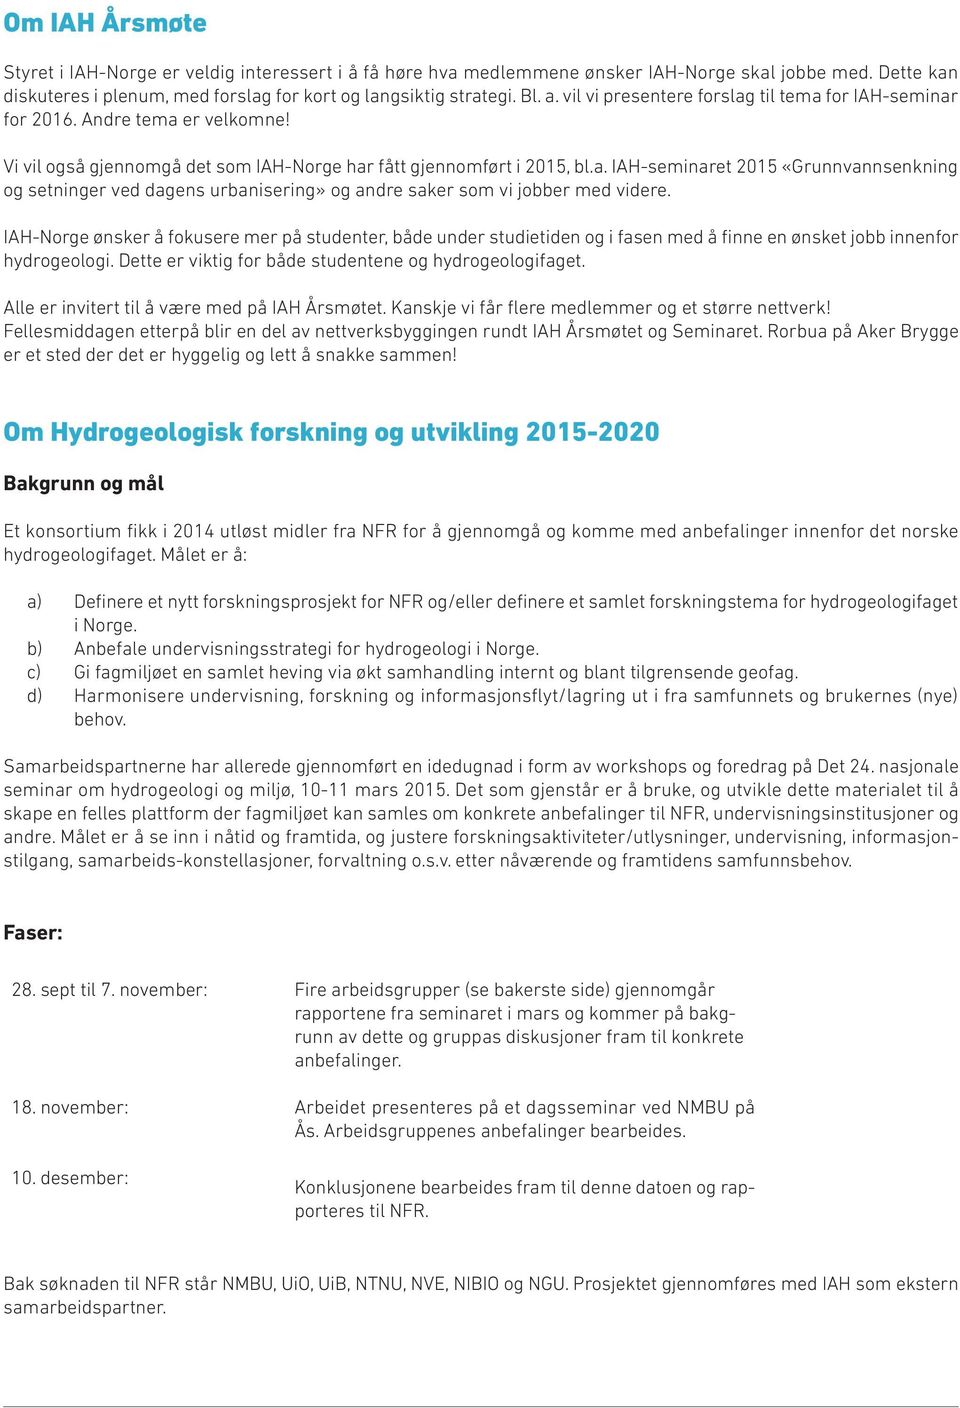 IAH-Norge ønsker å fokusere mer på studenter, både under studietiden og i fasen med å finne en ønsket jobb innenfor hydrogeologi. Dette er viktig for både studentene og hydrogeologifaget.